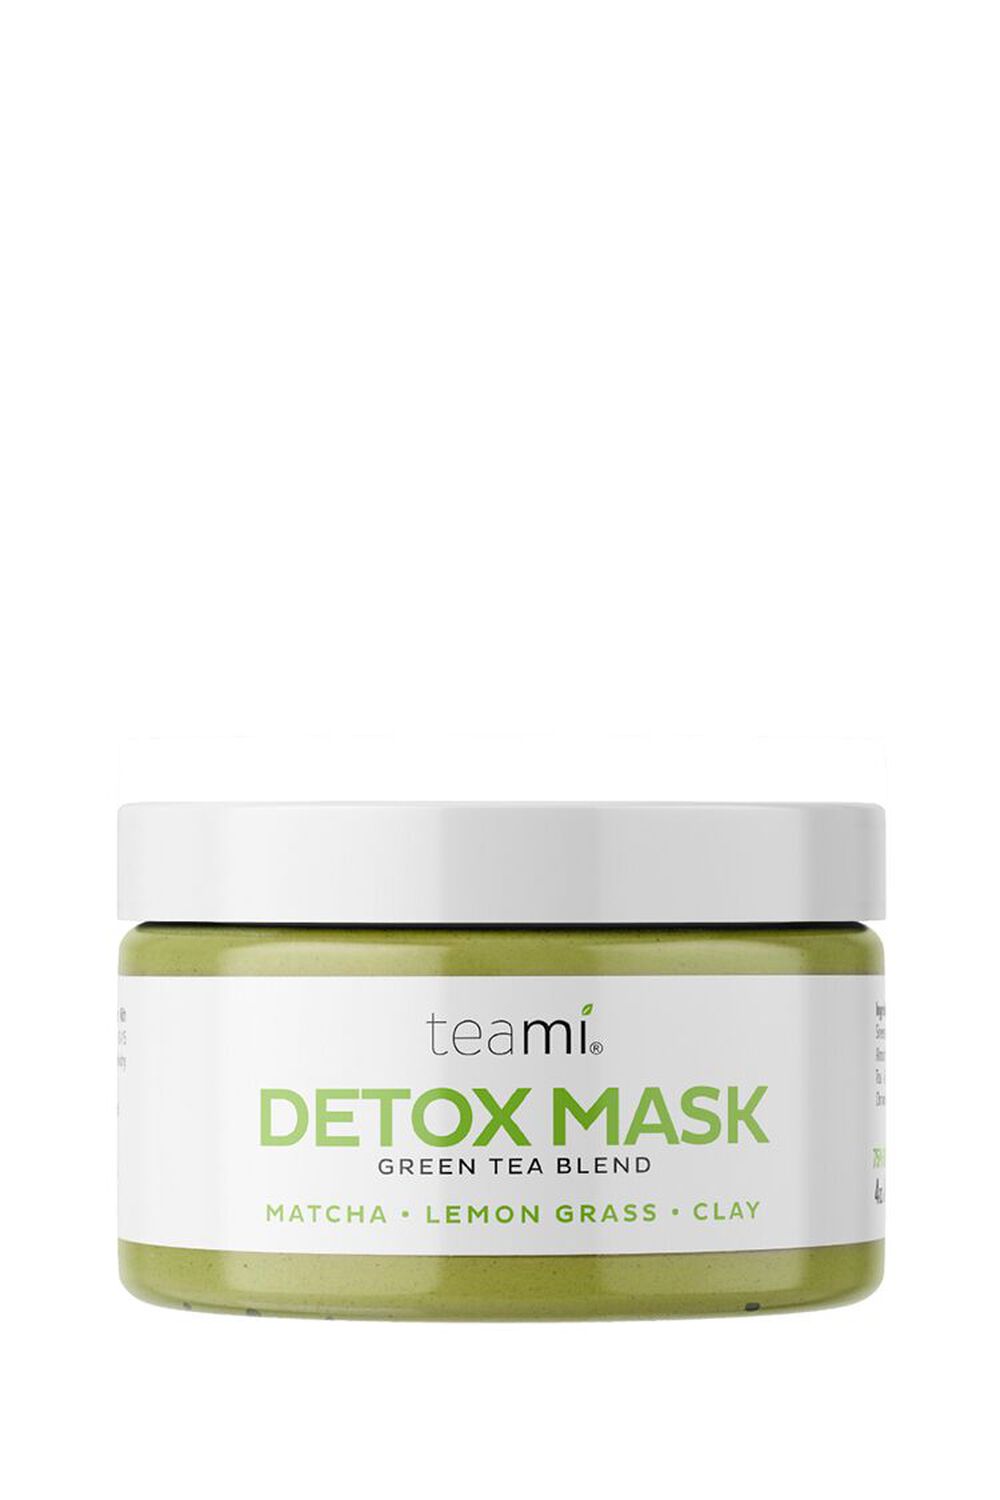 Teami Green Tea Detox Mask, image 2